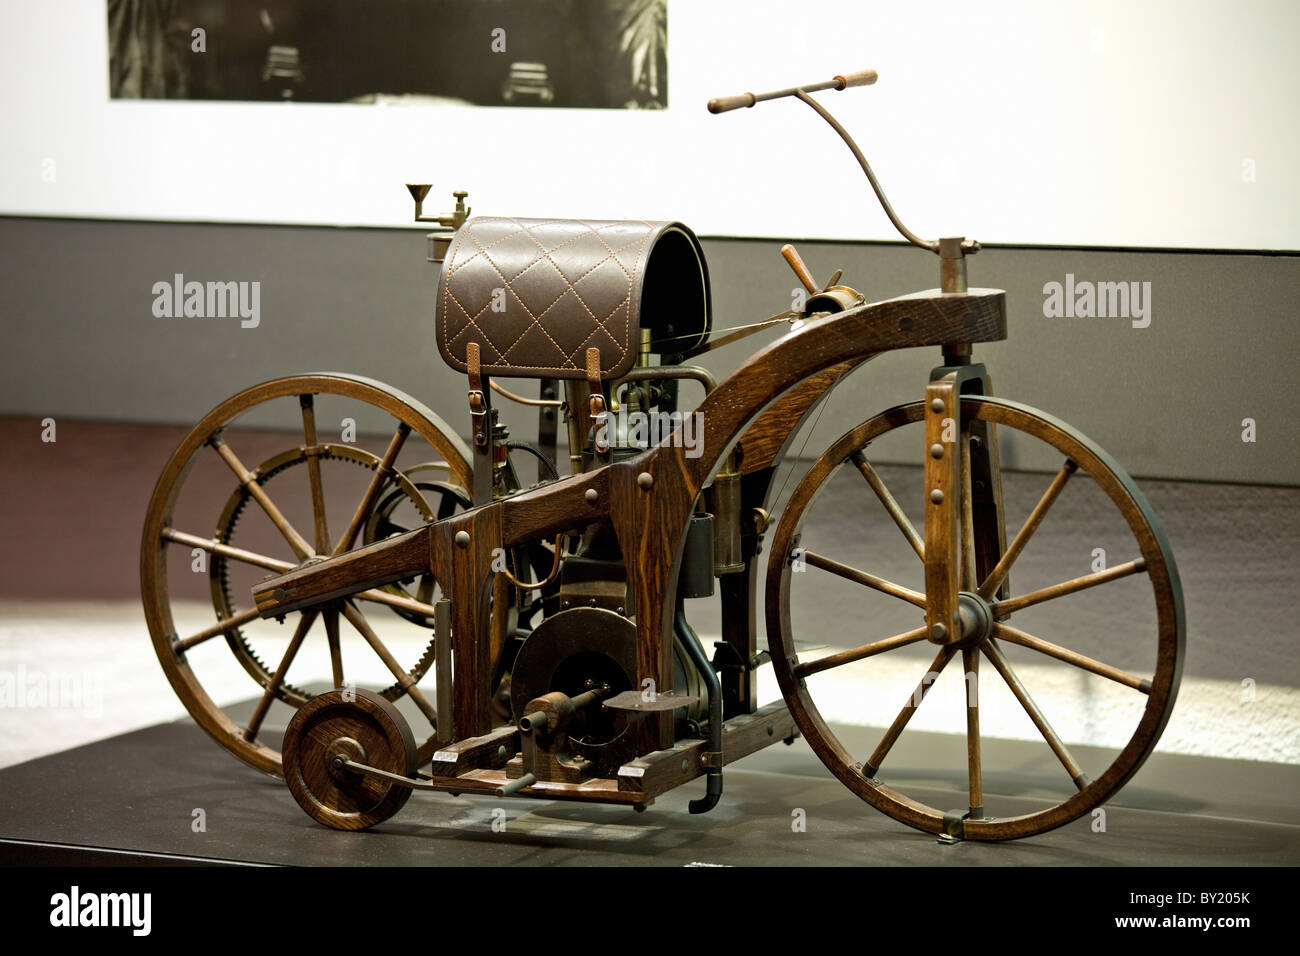 Allemagne, Bad Cannstatt, Mémorial Gottlieb Daimler, réplique de la première voiture à cheval, la première moto au monde 1885 Banque D'Images